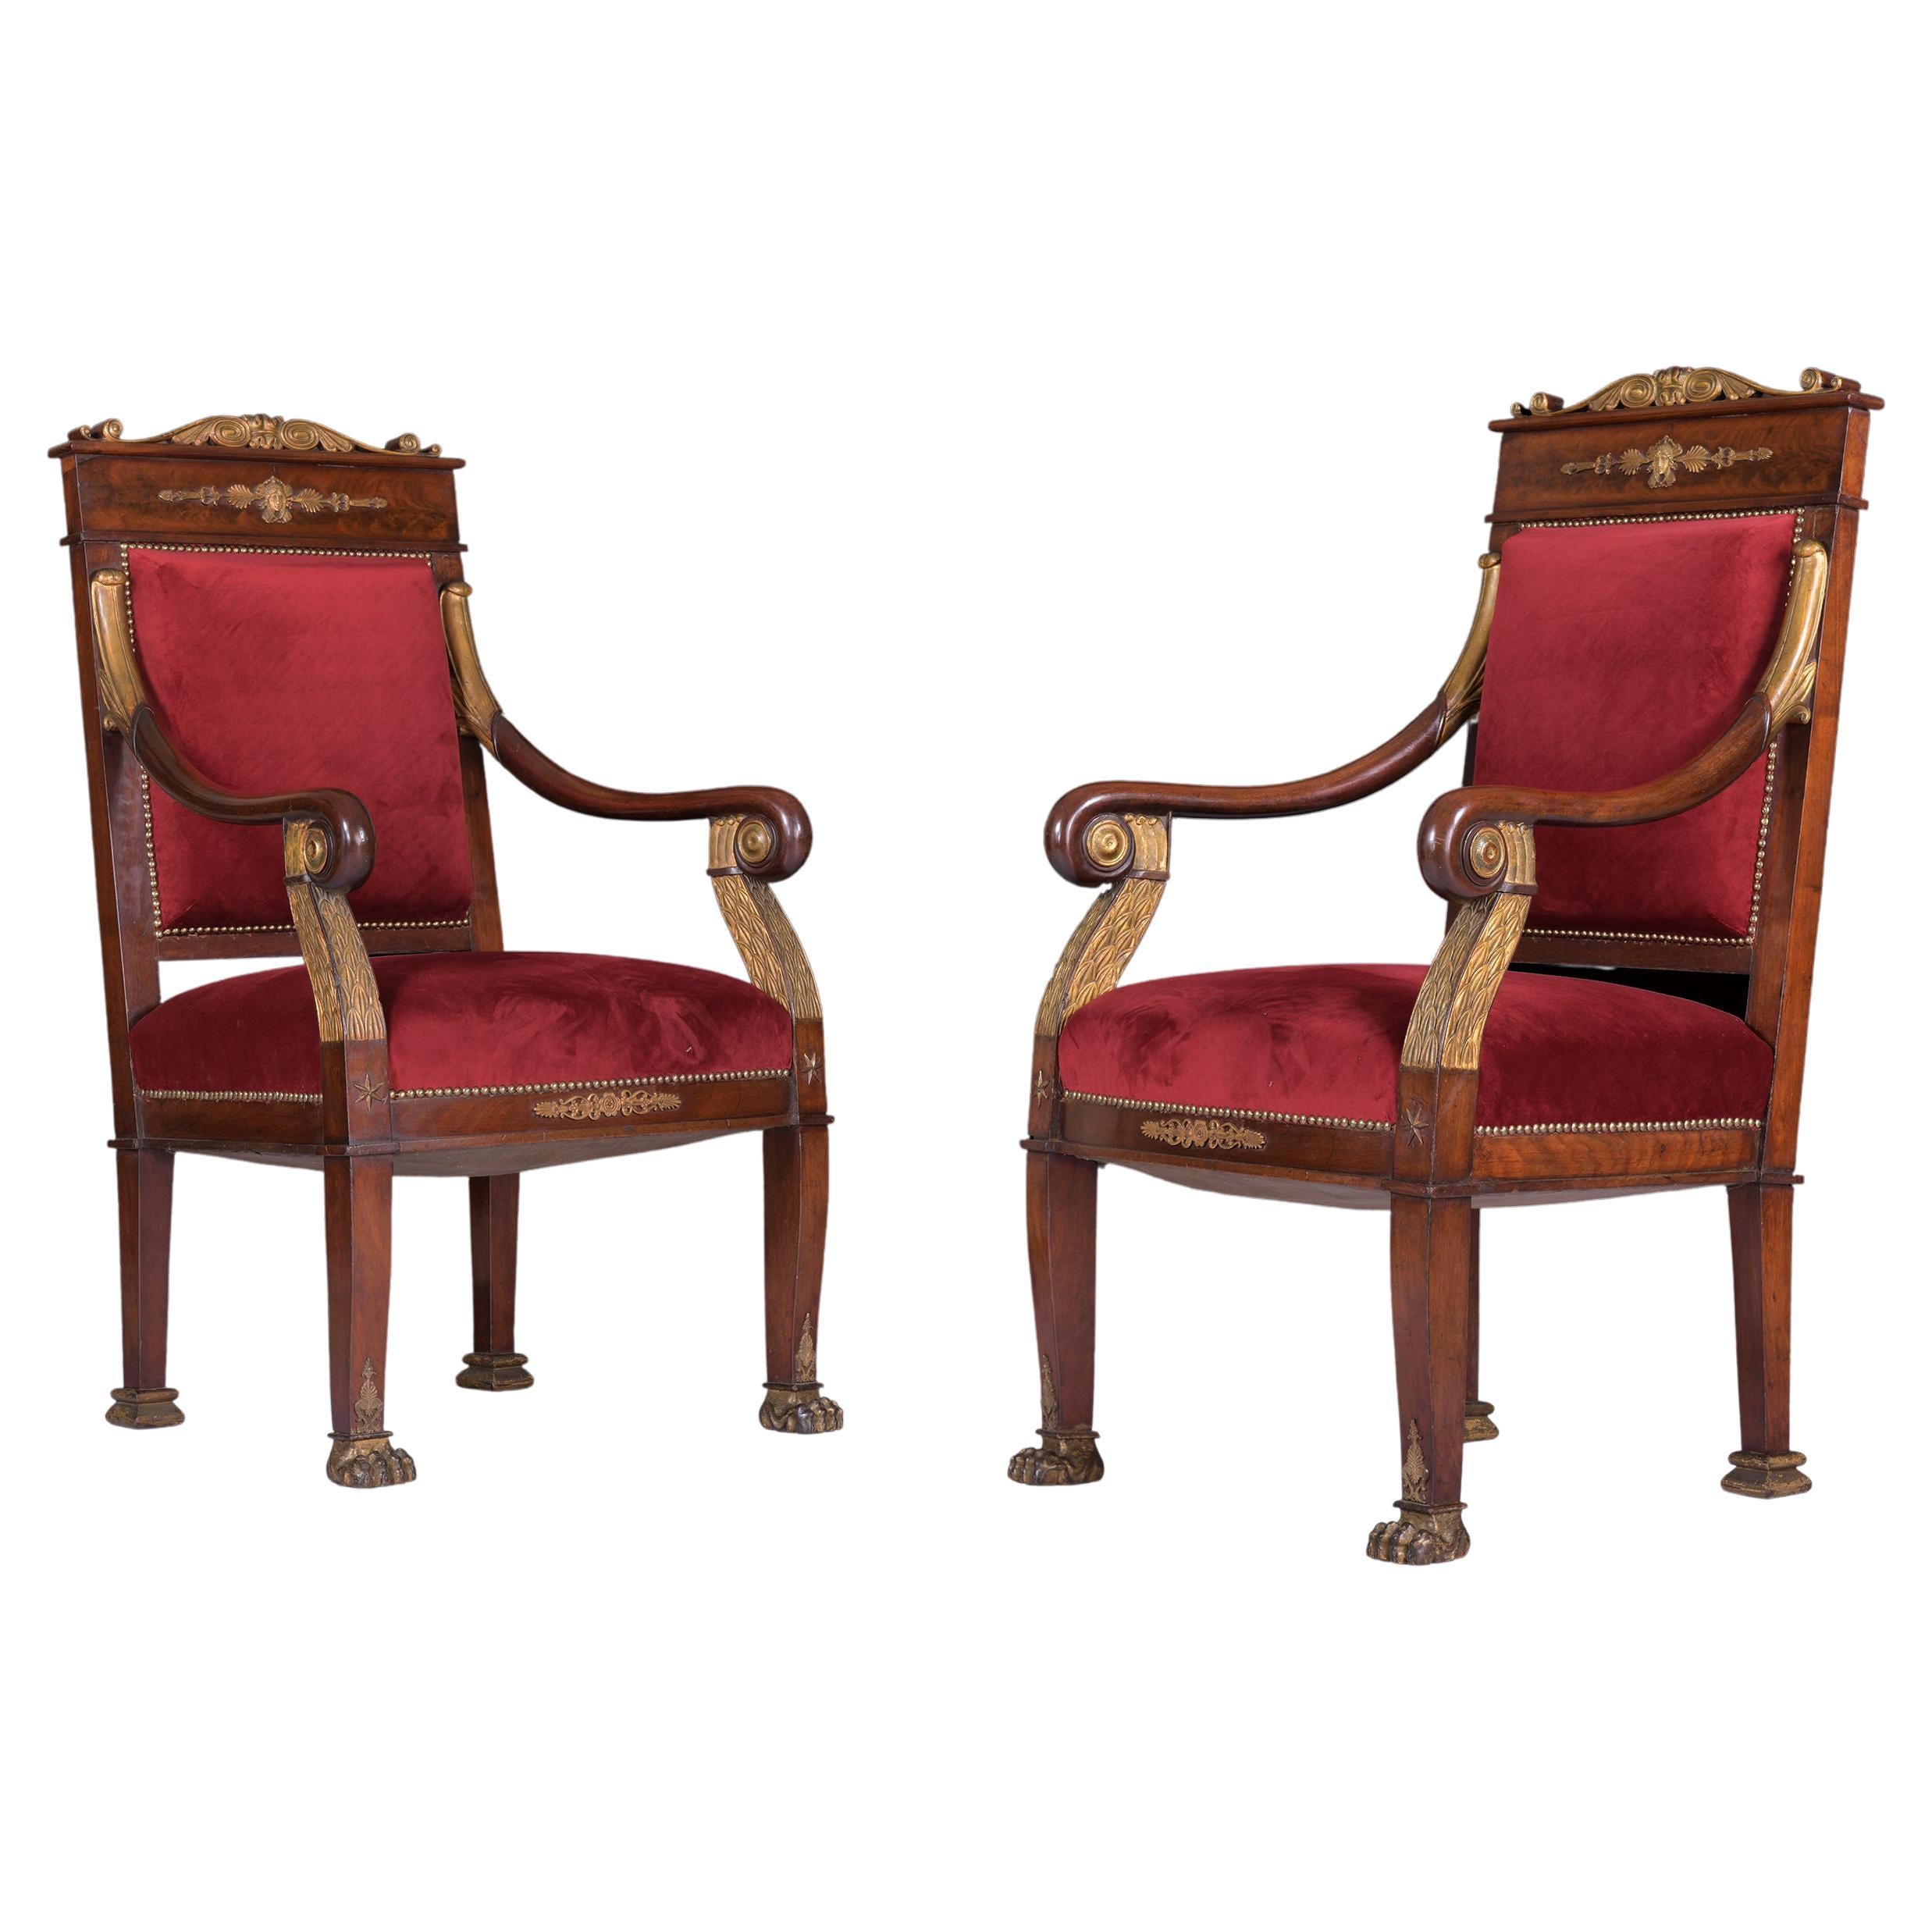 Paar französische Empire-Sessel des frühen 19. Jahrhunderts in der Art von Jacob-Desmalter